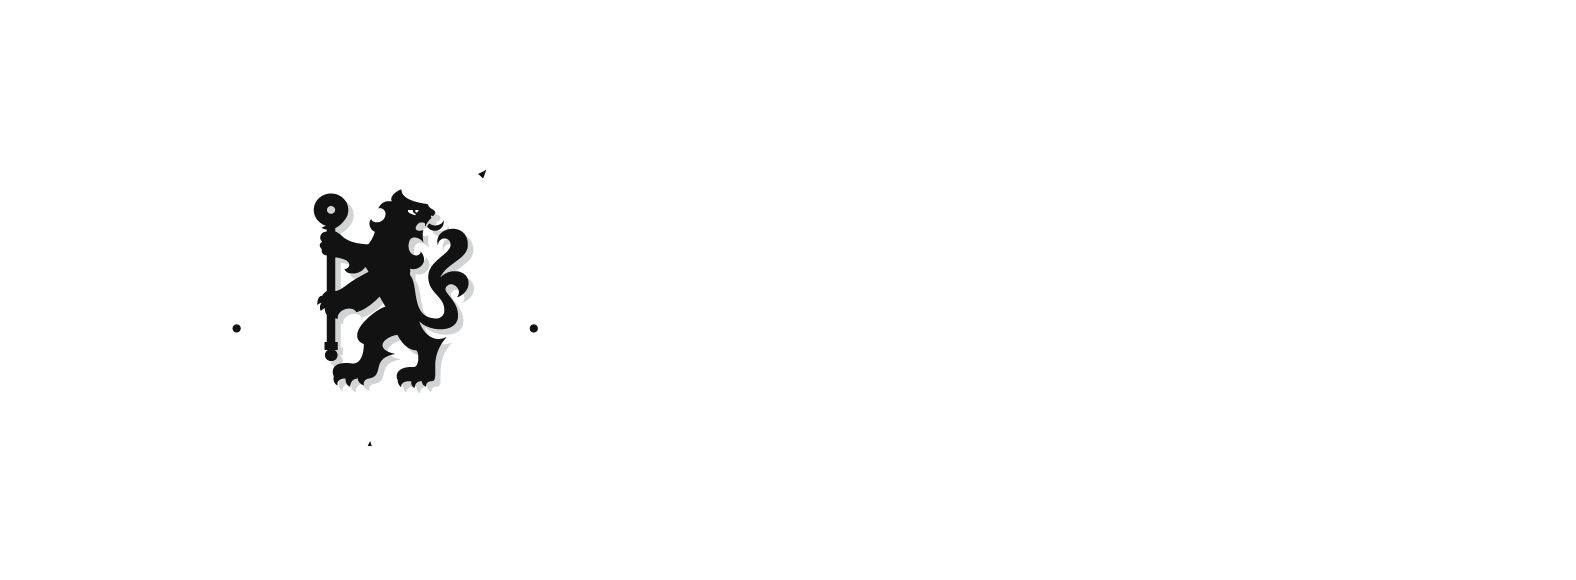 Chelsea football club x sail GP logos